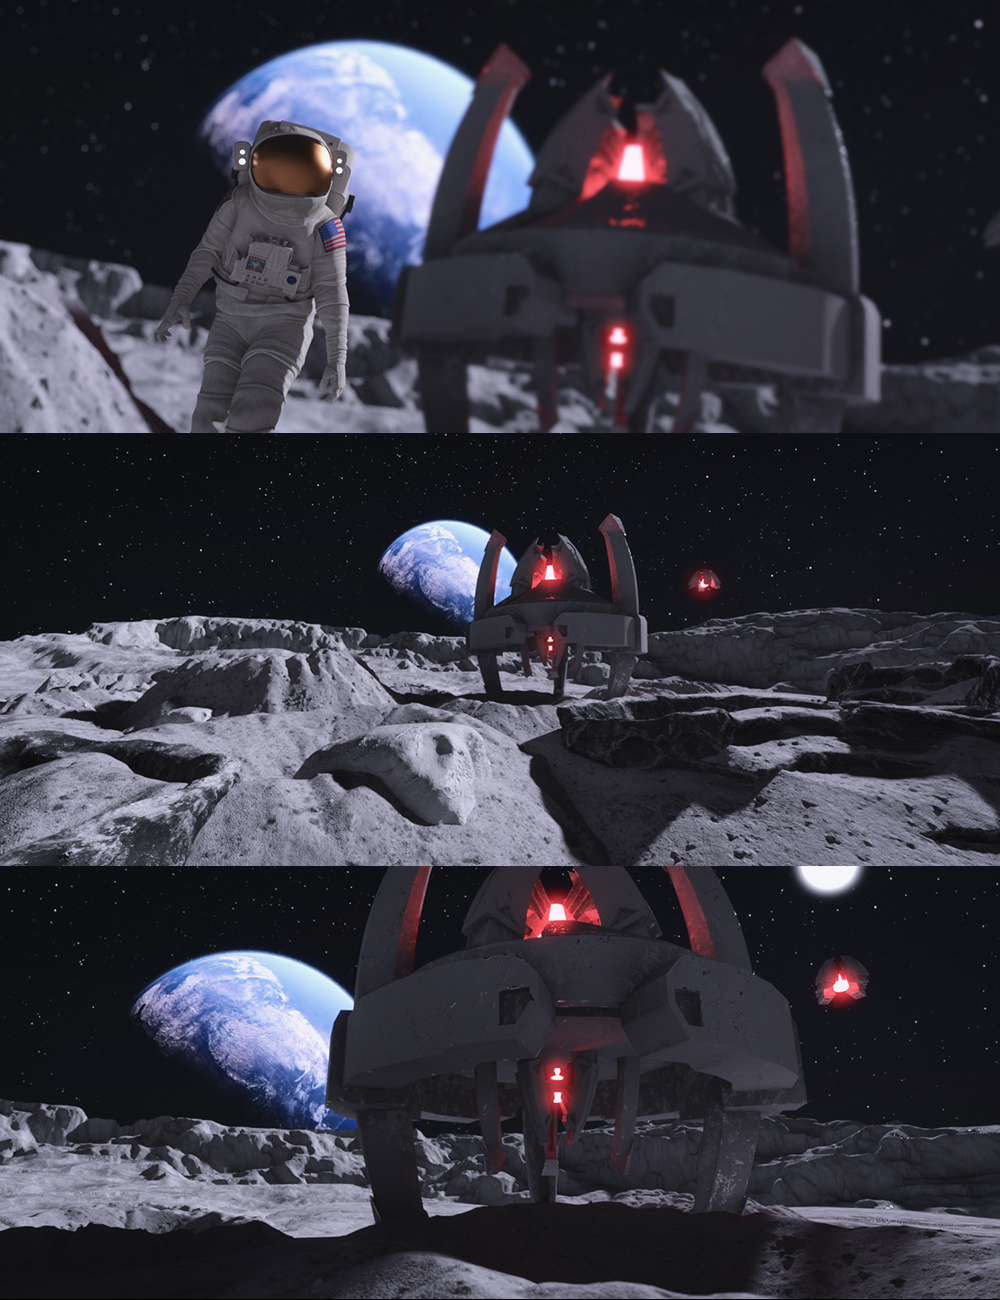 Aliens On The Moon by: Dreamlight, 3D Models by Daz 3D